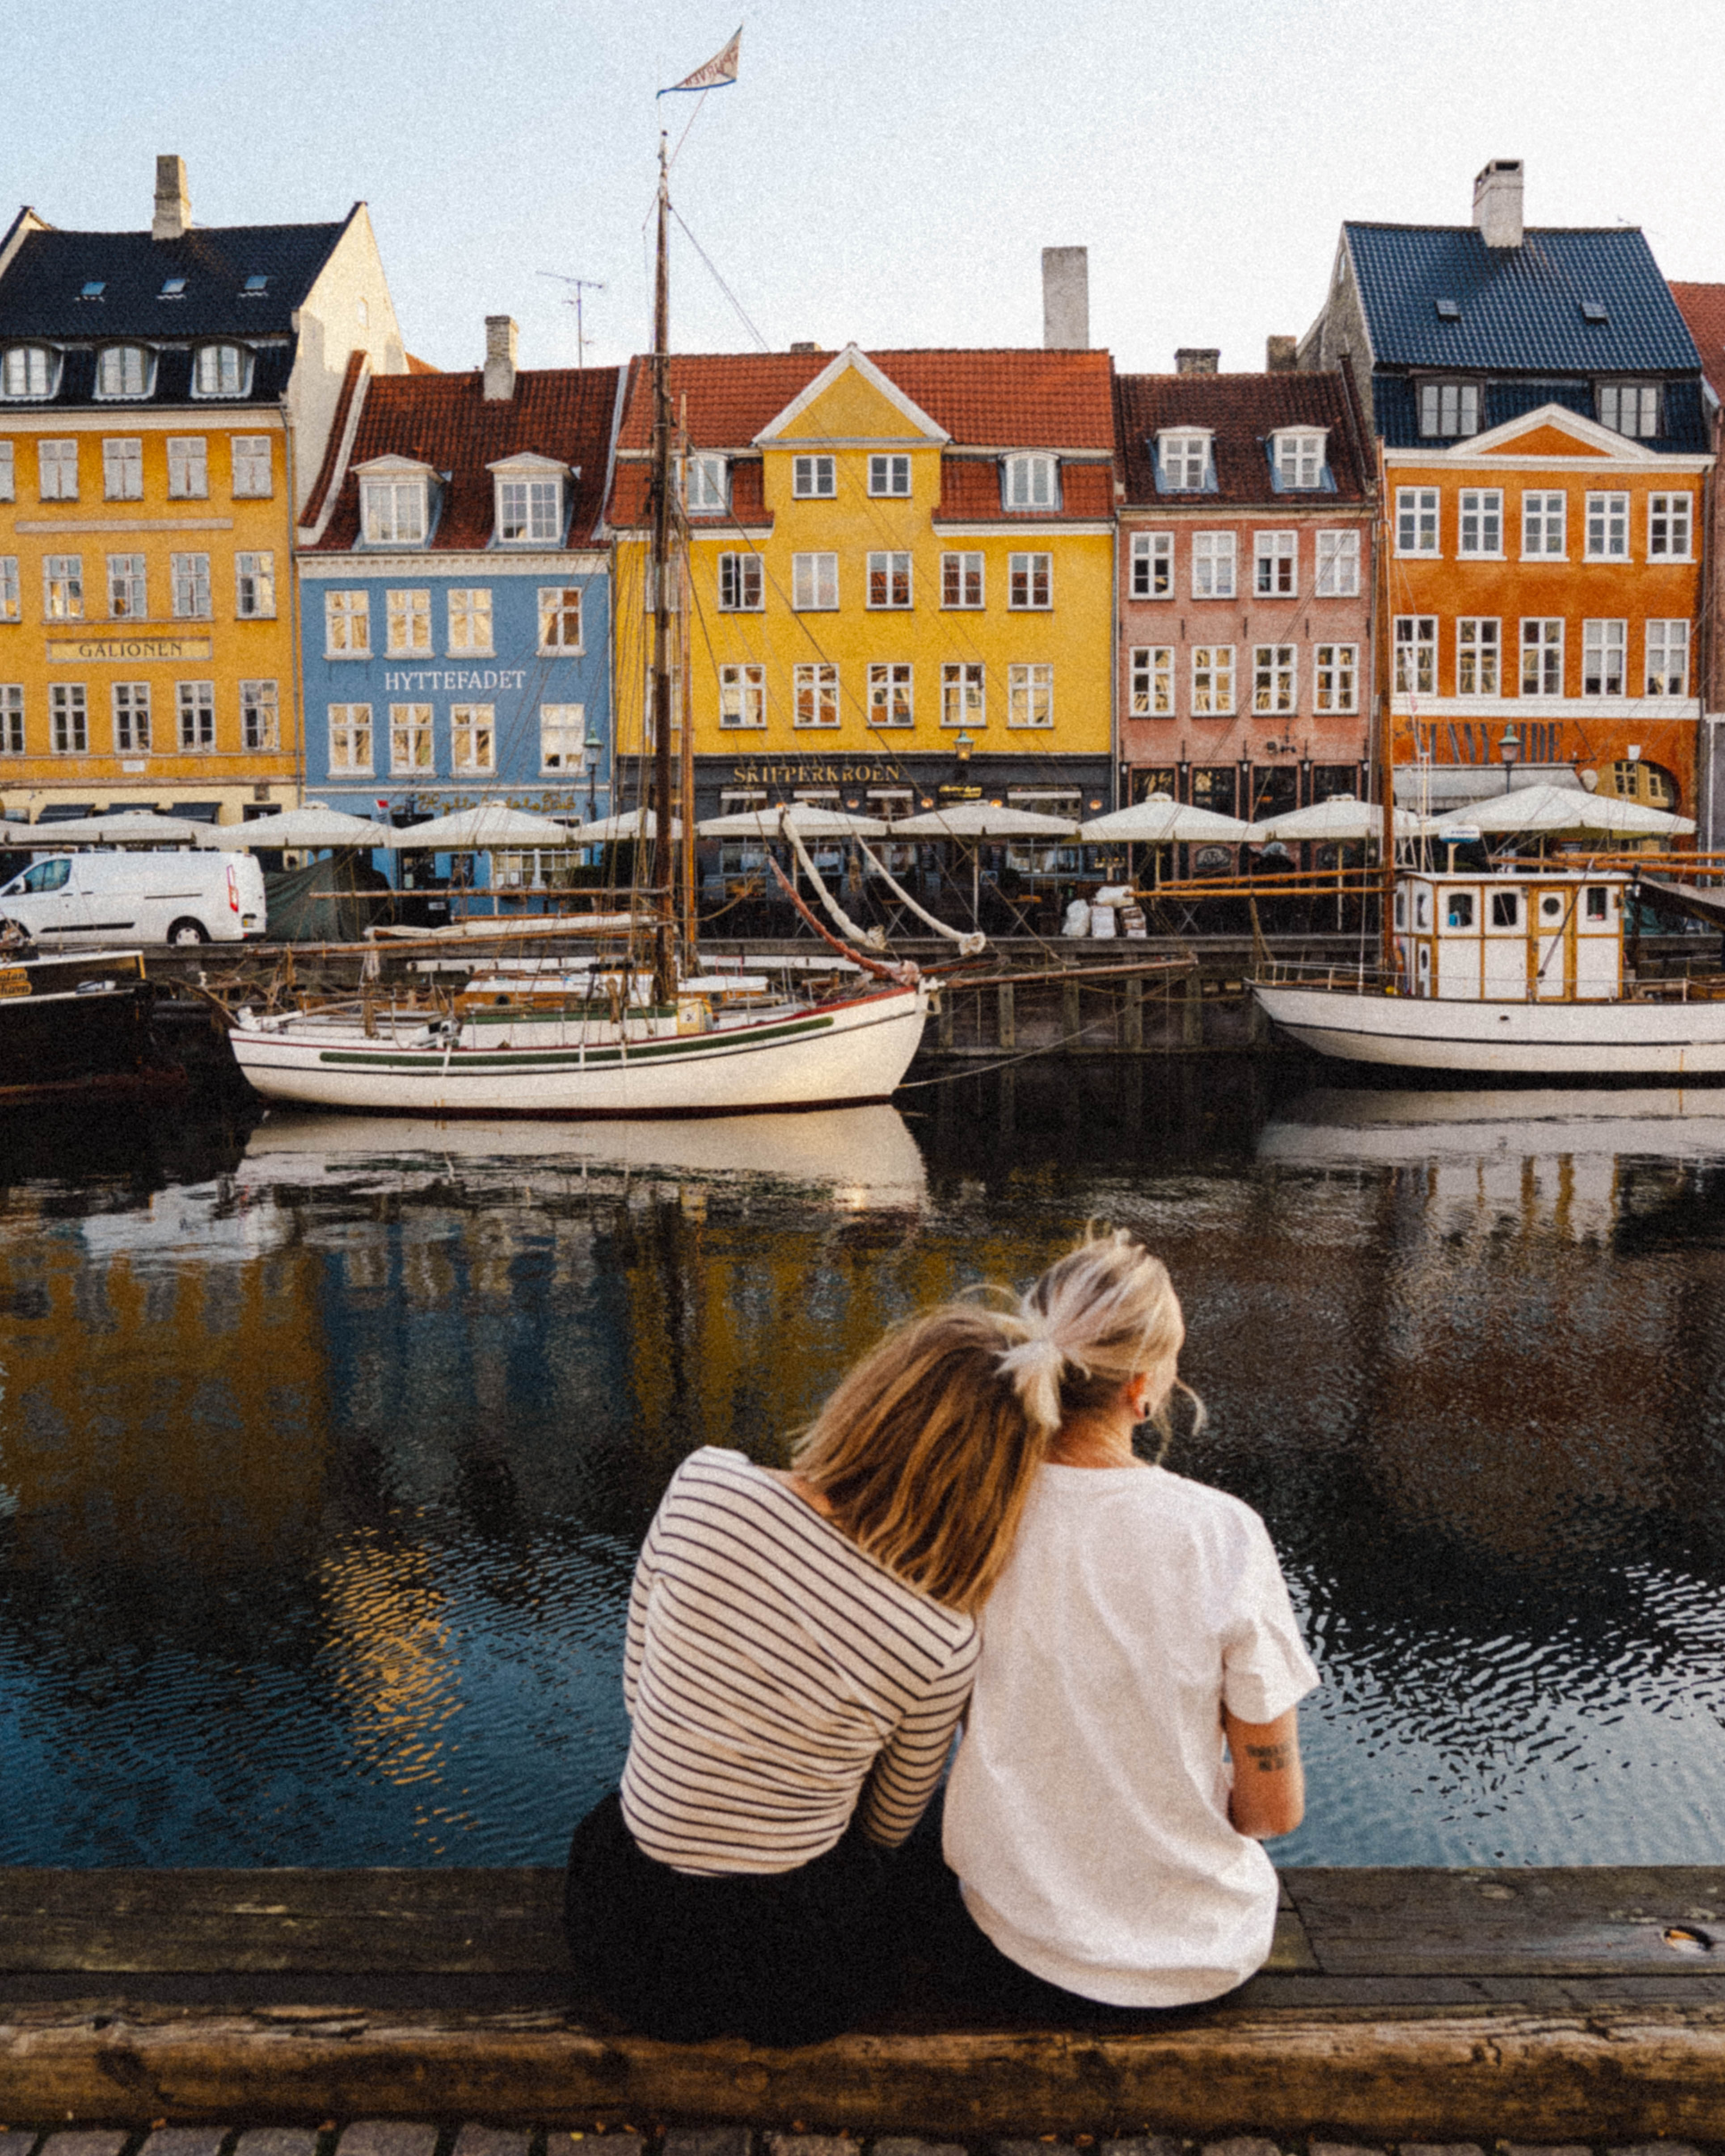 One day in Copenhagen - Nyhavn